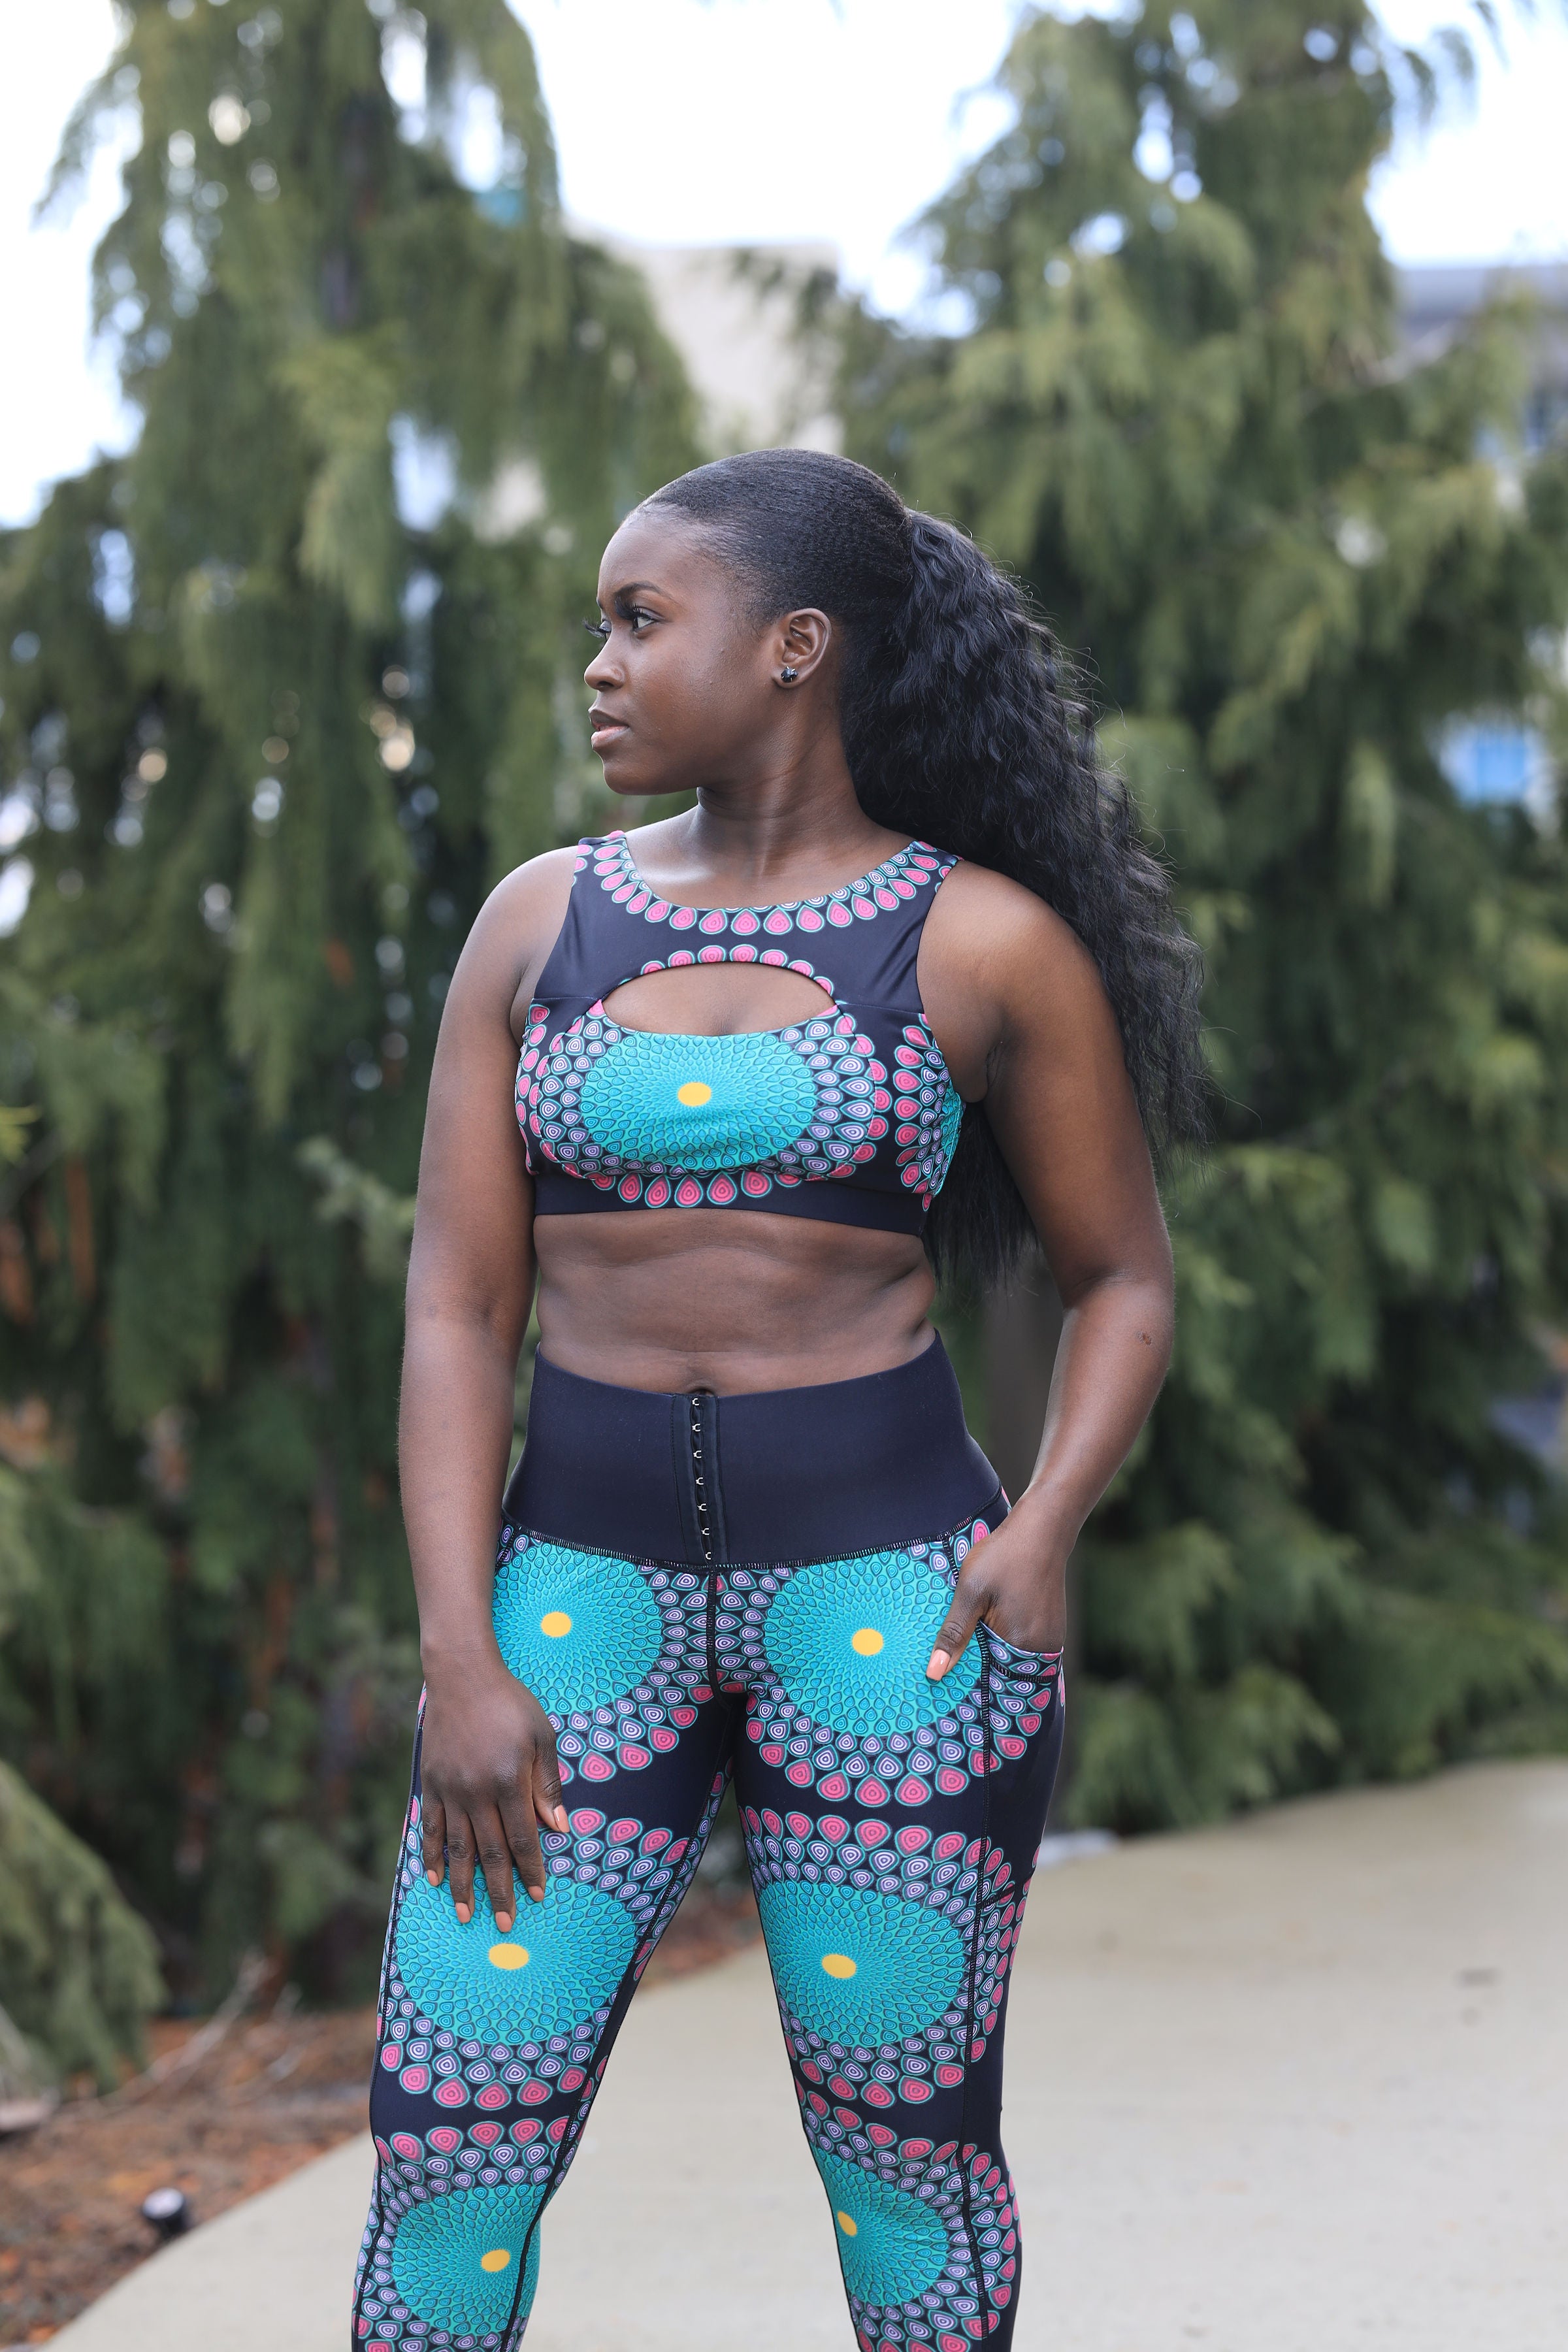 Bandeau noir- Tissu extensible - Yoga / Sports / Décontracté - Unisex –  AfricanFabs